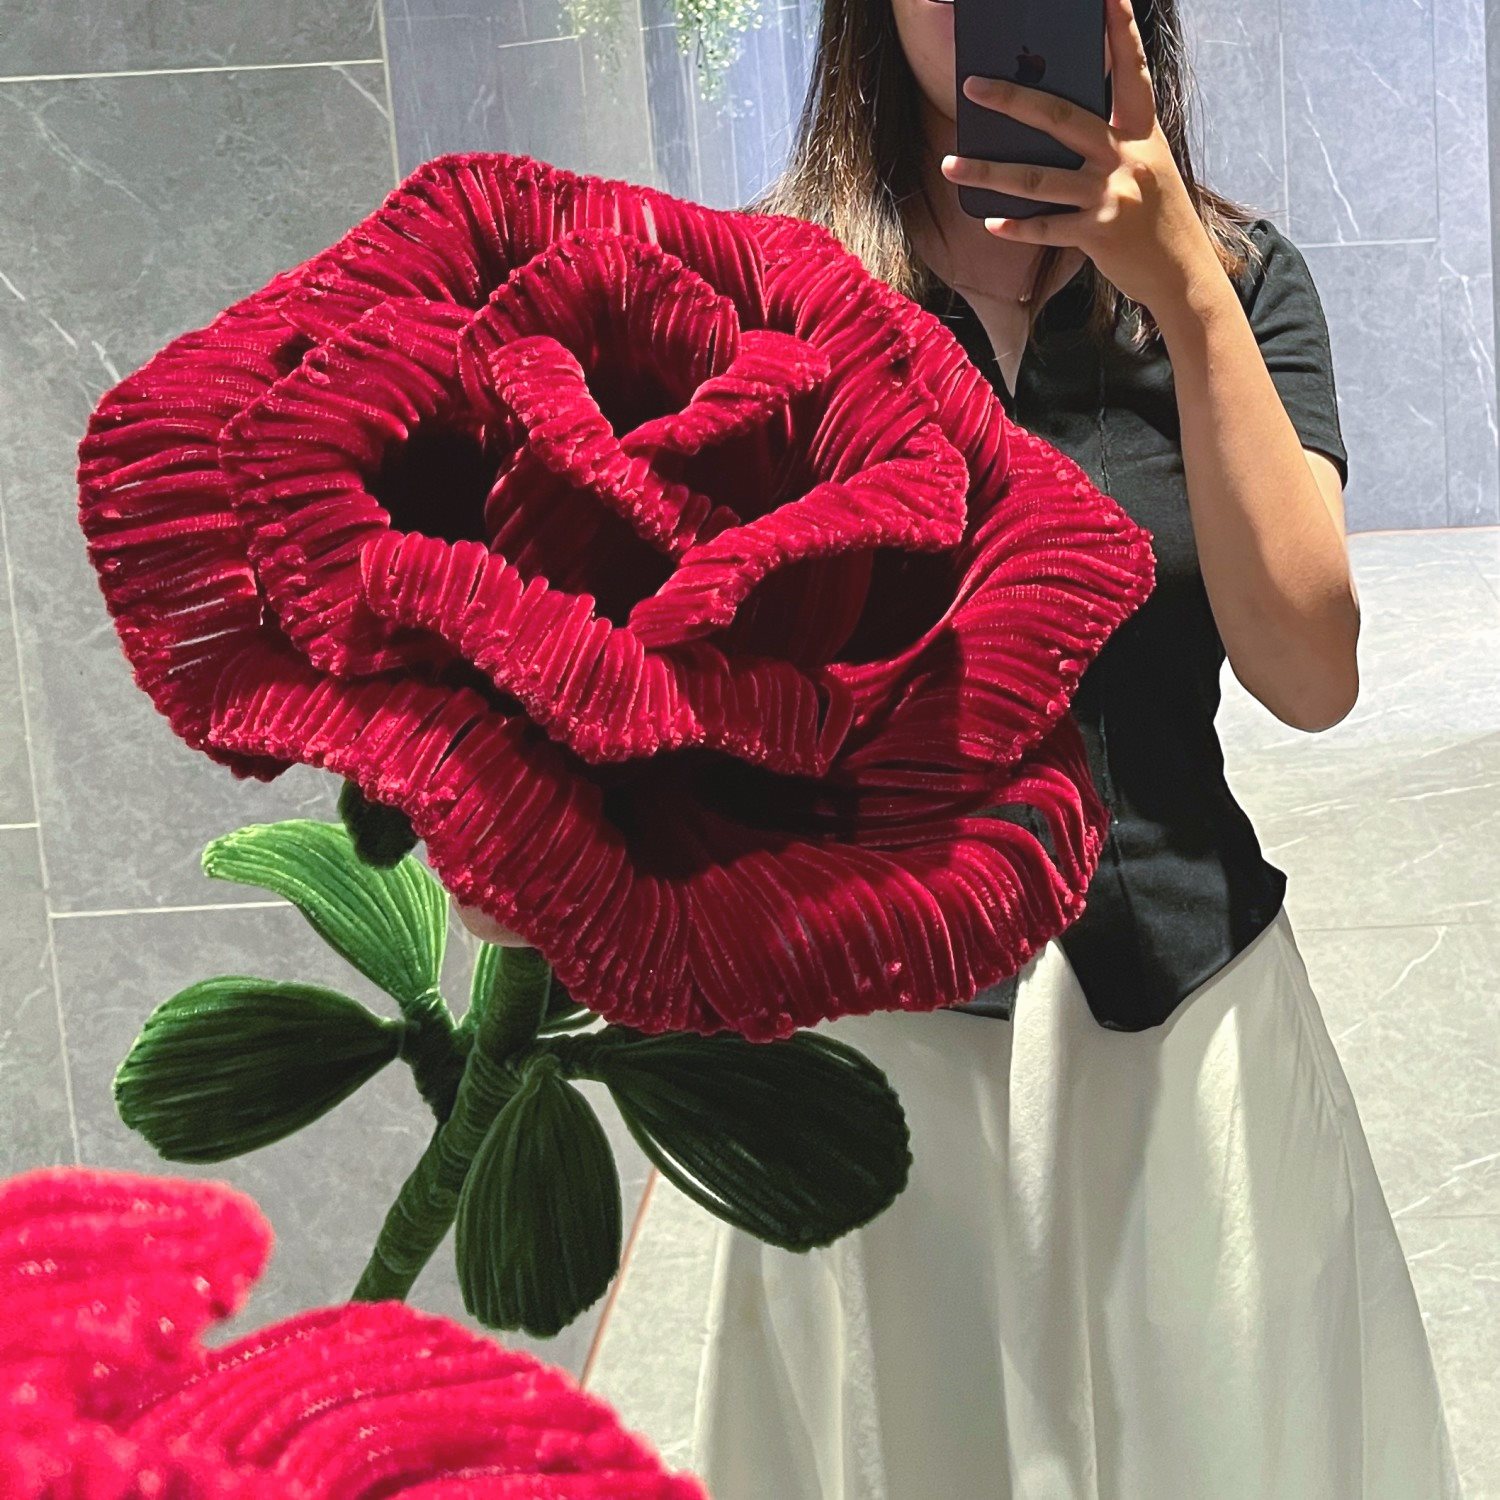 巨型玫瑰一支巨大玫瑰花超大巨型玫瑰节日道具装饰抖音网红同款